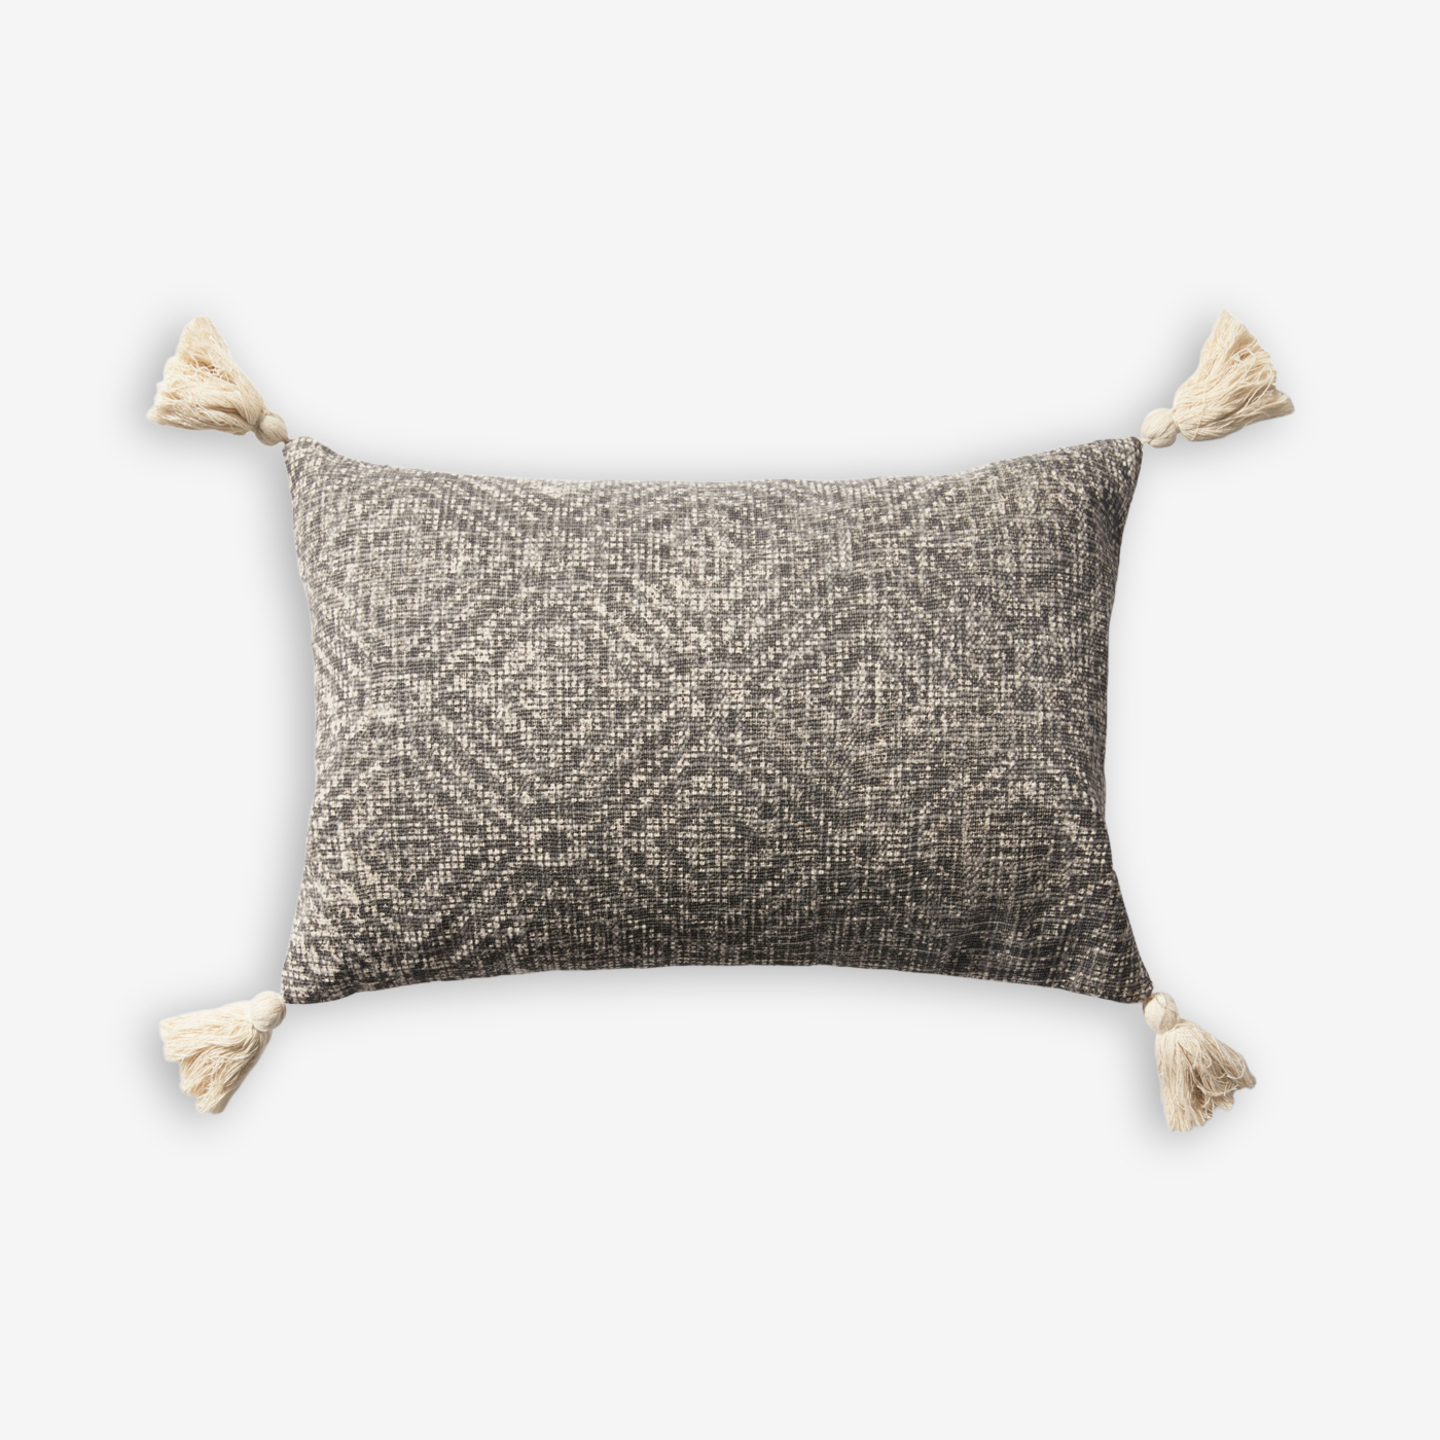 Kimber Throw Pillow (13"x21")